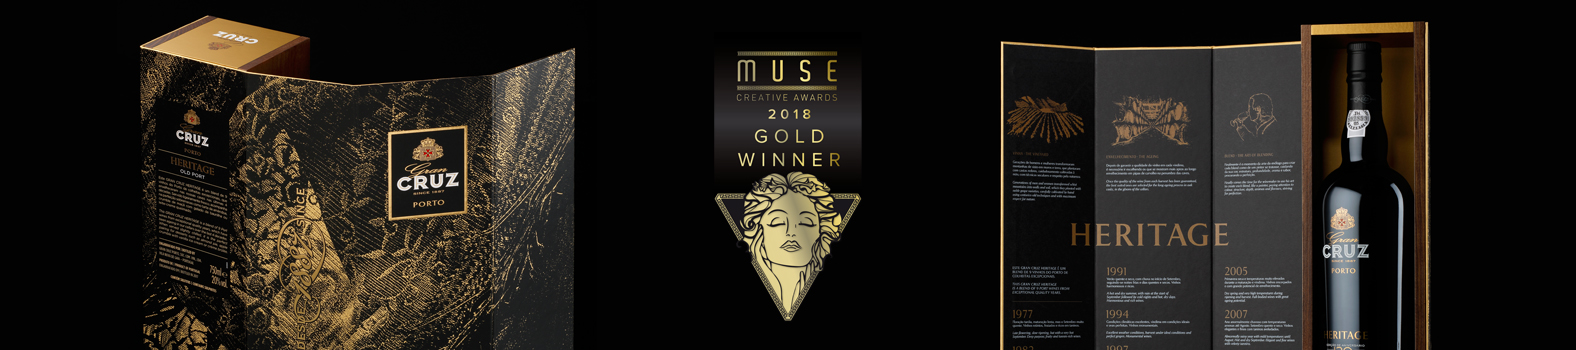 Omdesign voltar a marcar nos Muse Creative Awards